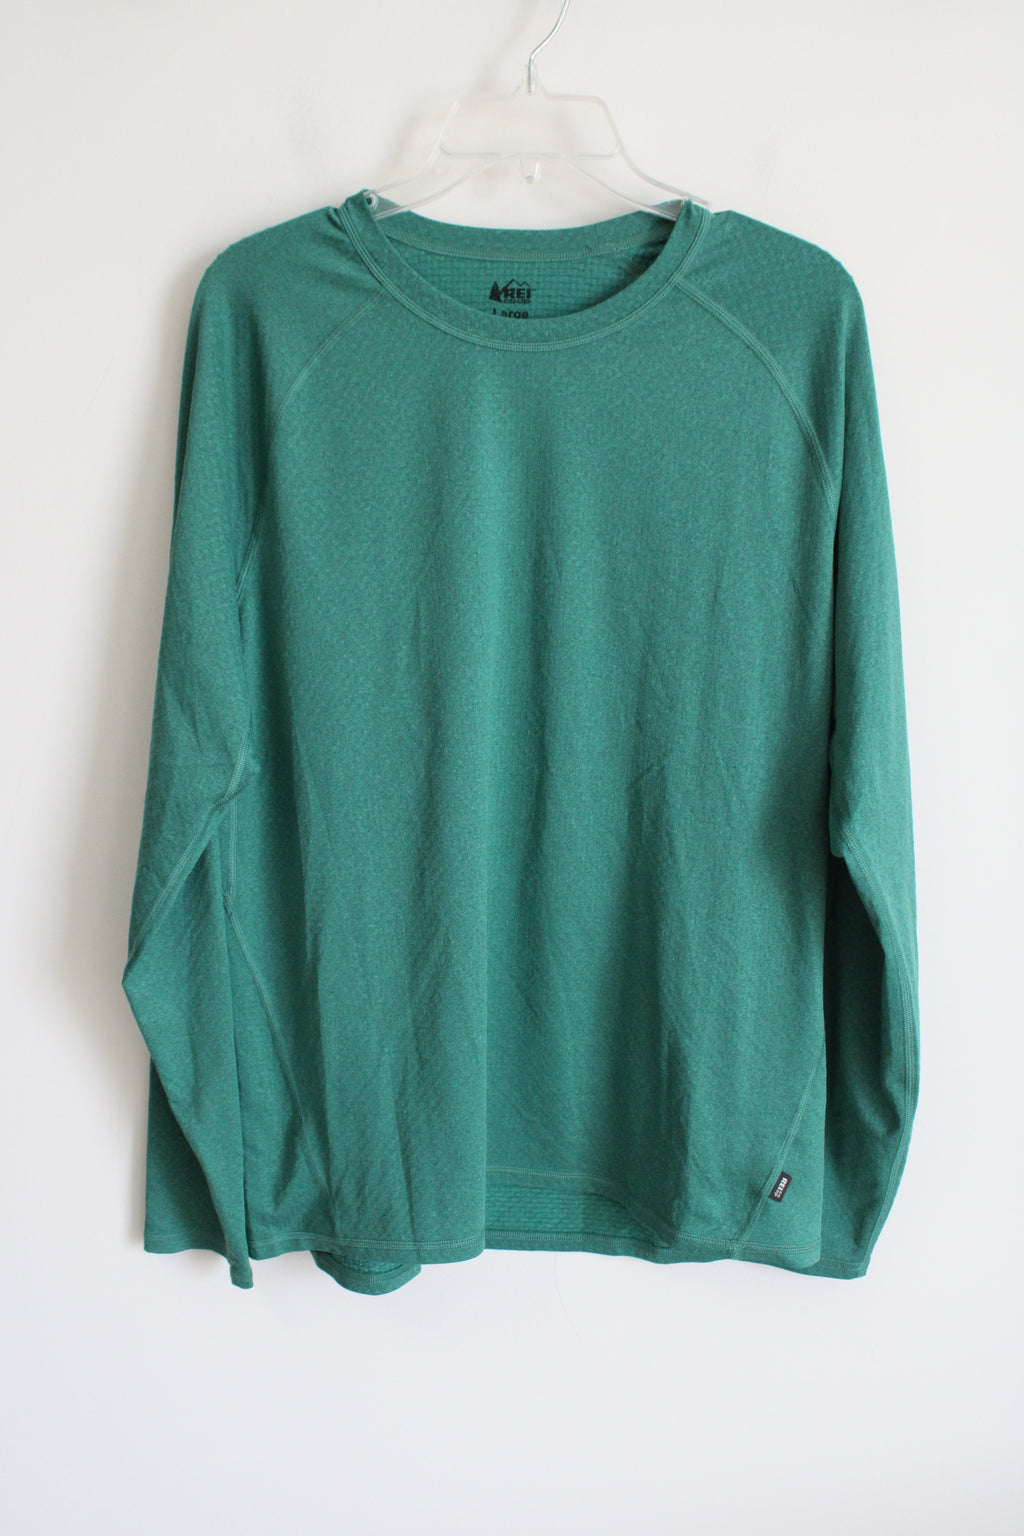 REI Co-Op Green Shirt | L